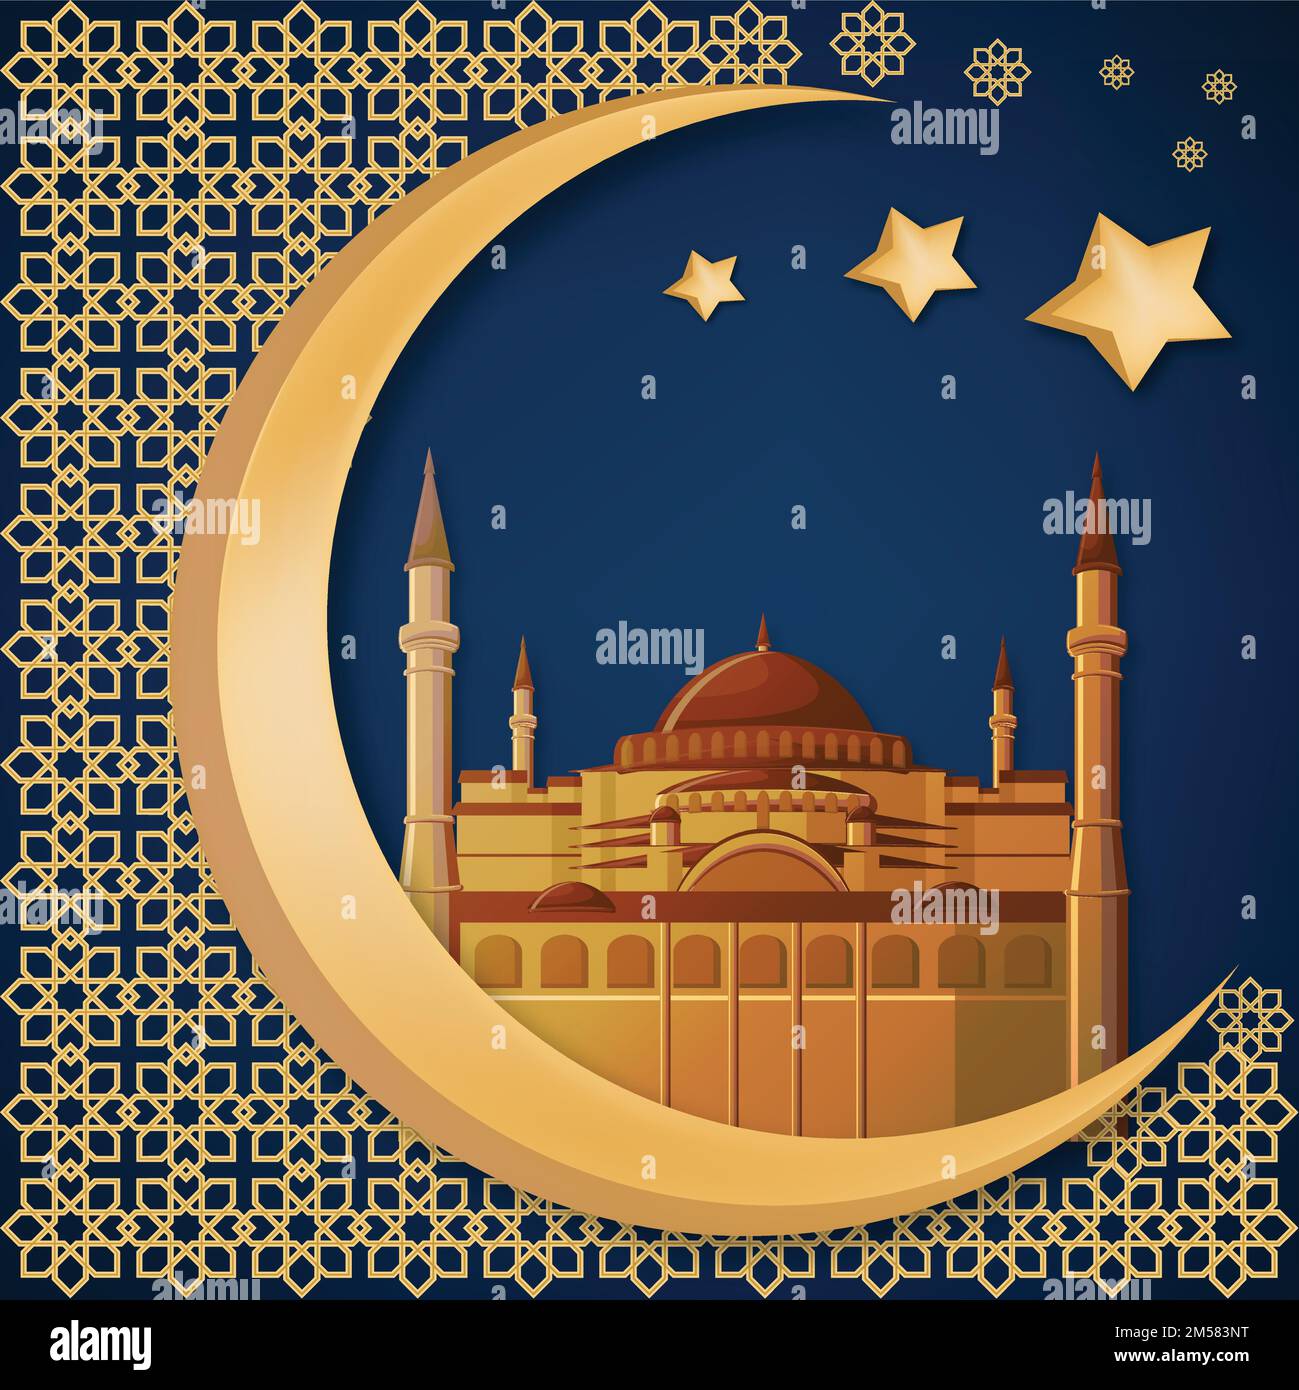 Abstrakte Hintergrundvorlage für Ramadan Kareem mit hagia sophia oder Moschee, goldenem Mond, Stern, Text und arabischen Verzierungen. Vektordarstellung, EPS10. Stock Vektor